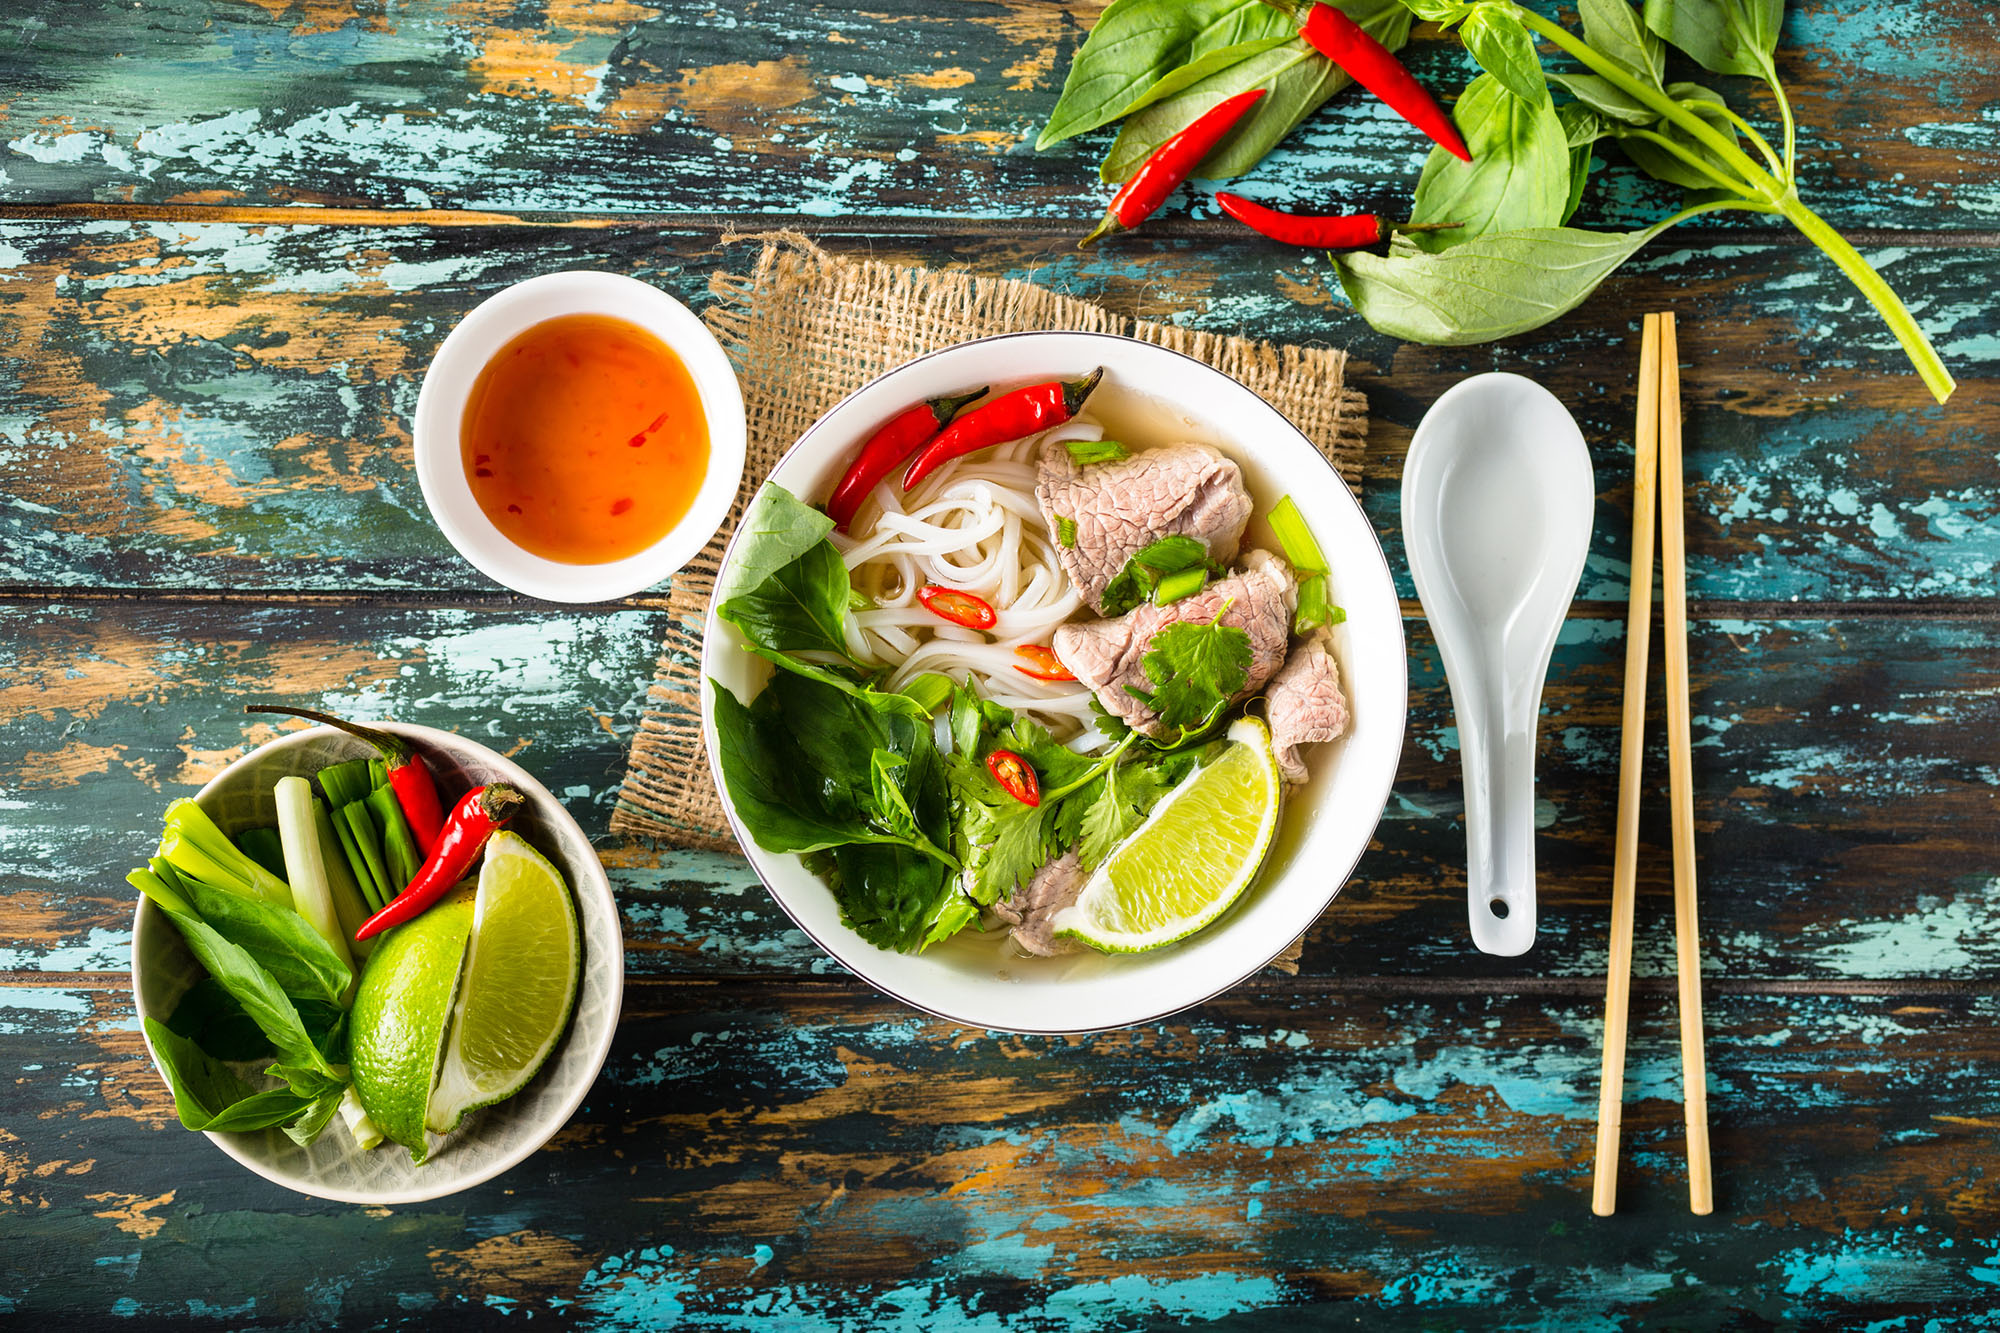 Eat pho in Vietnam